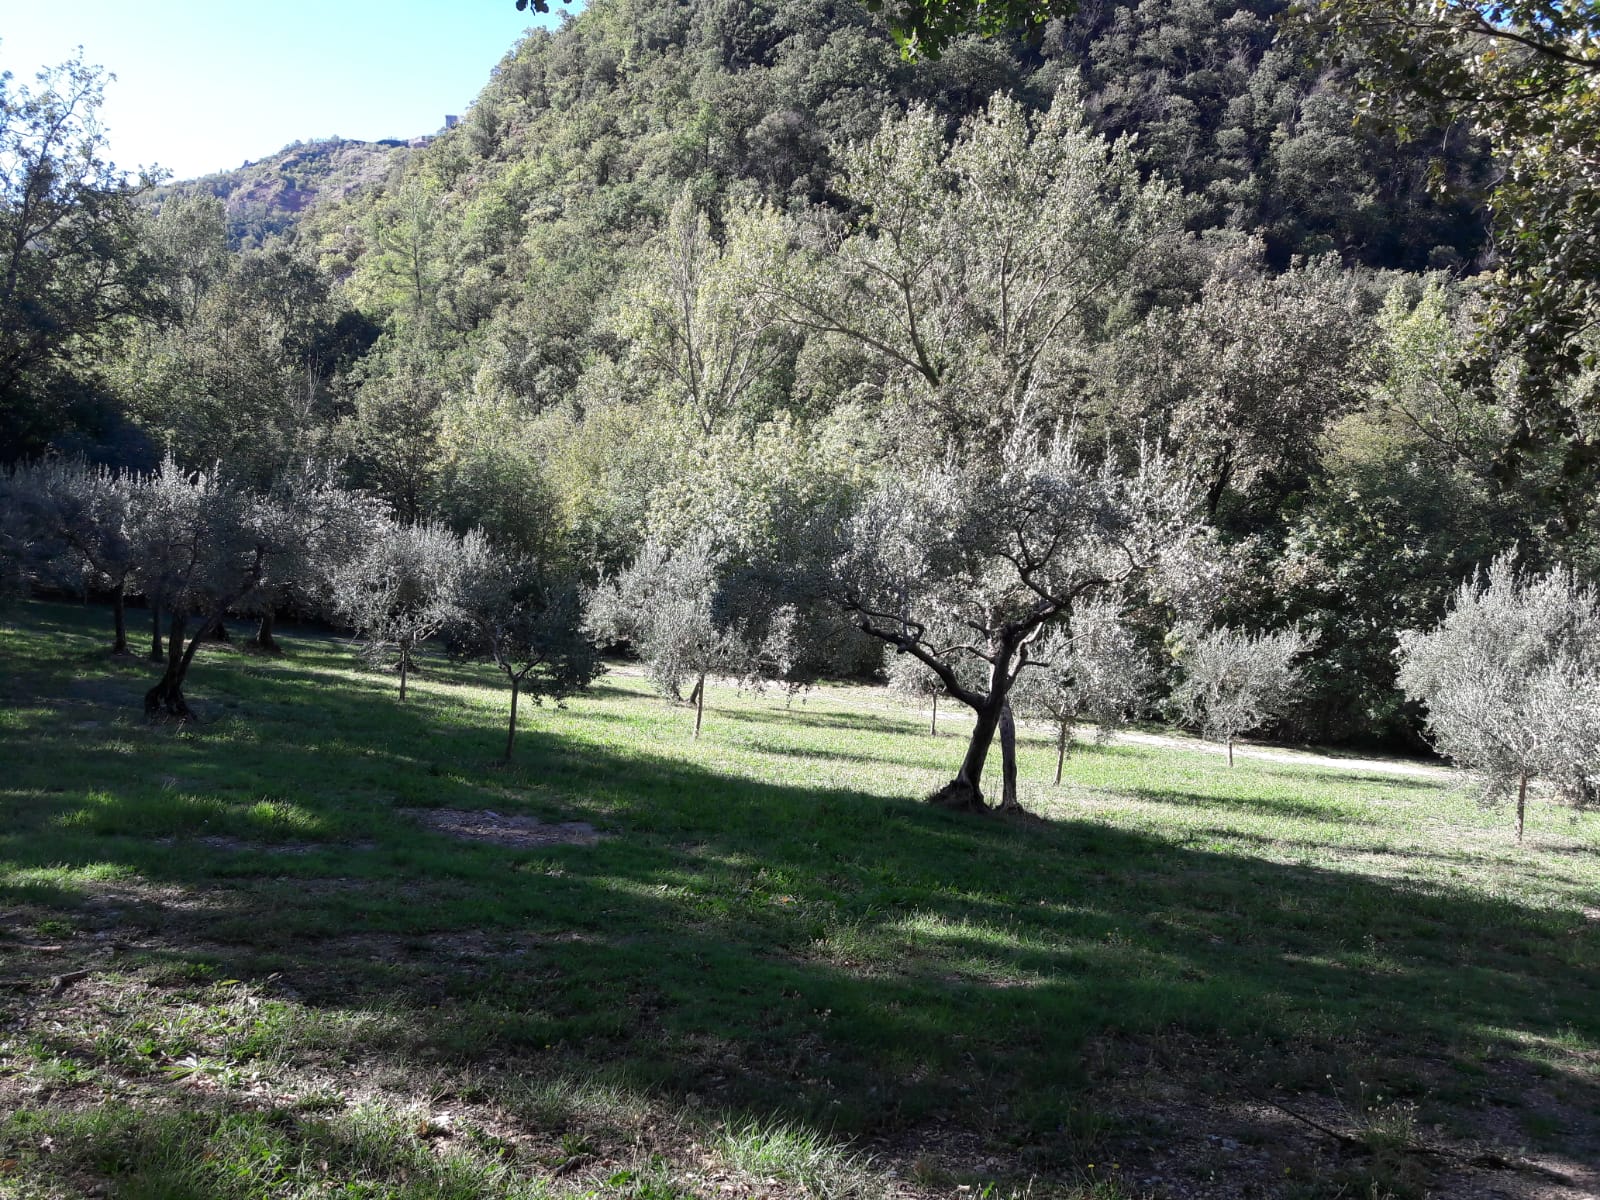 Landscape at the Woodland of San Francesco